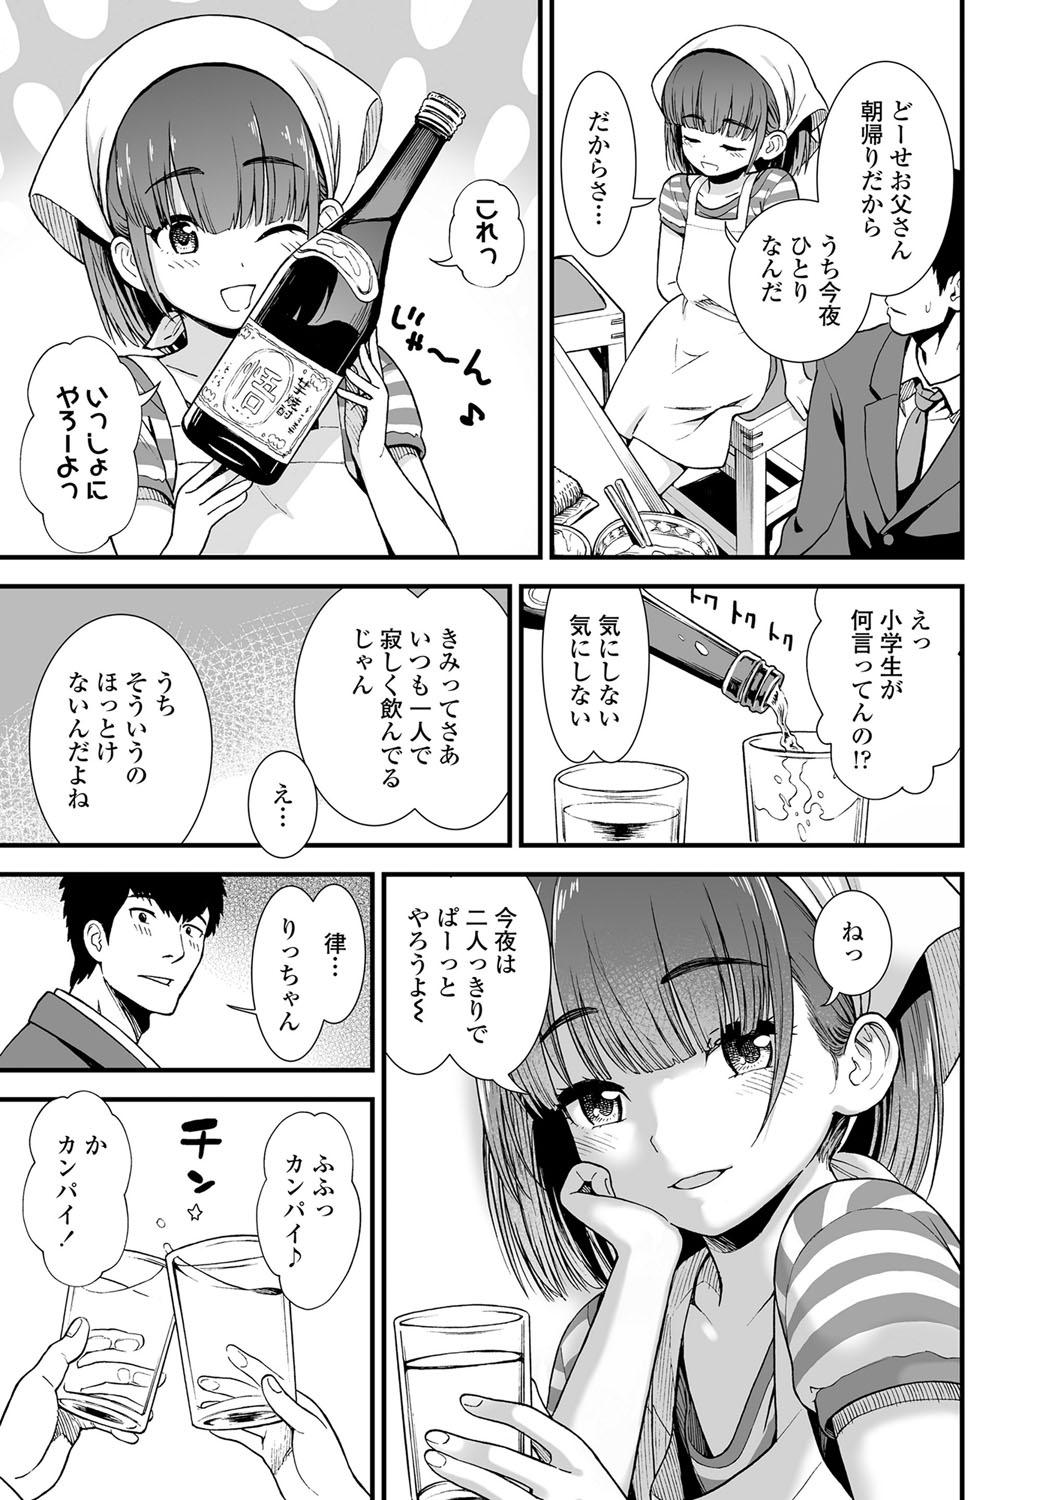 Teenfuns Ore wa Kuzu dakara koso Sukuwareru Kenri ga Aru! Body - Page 8